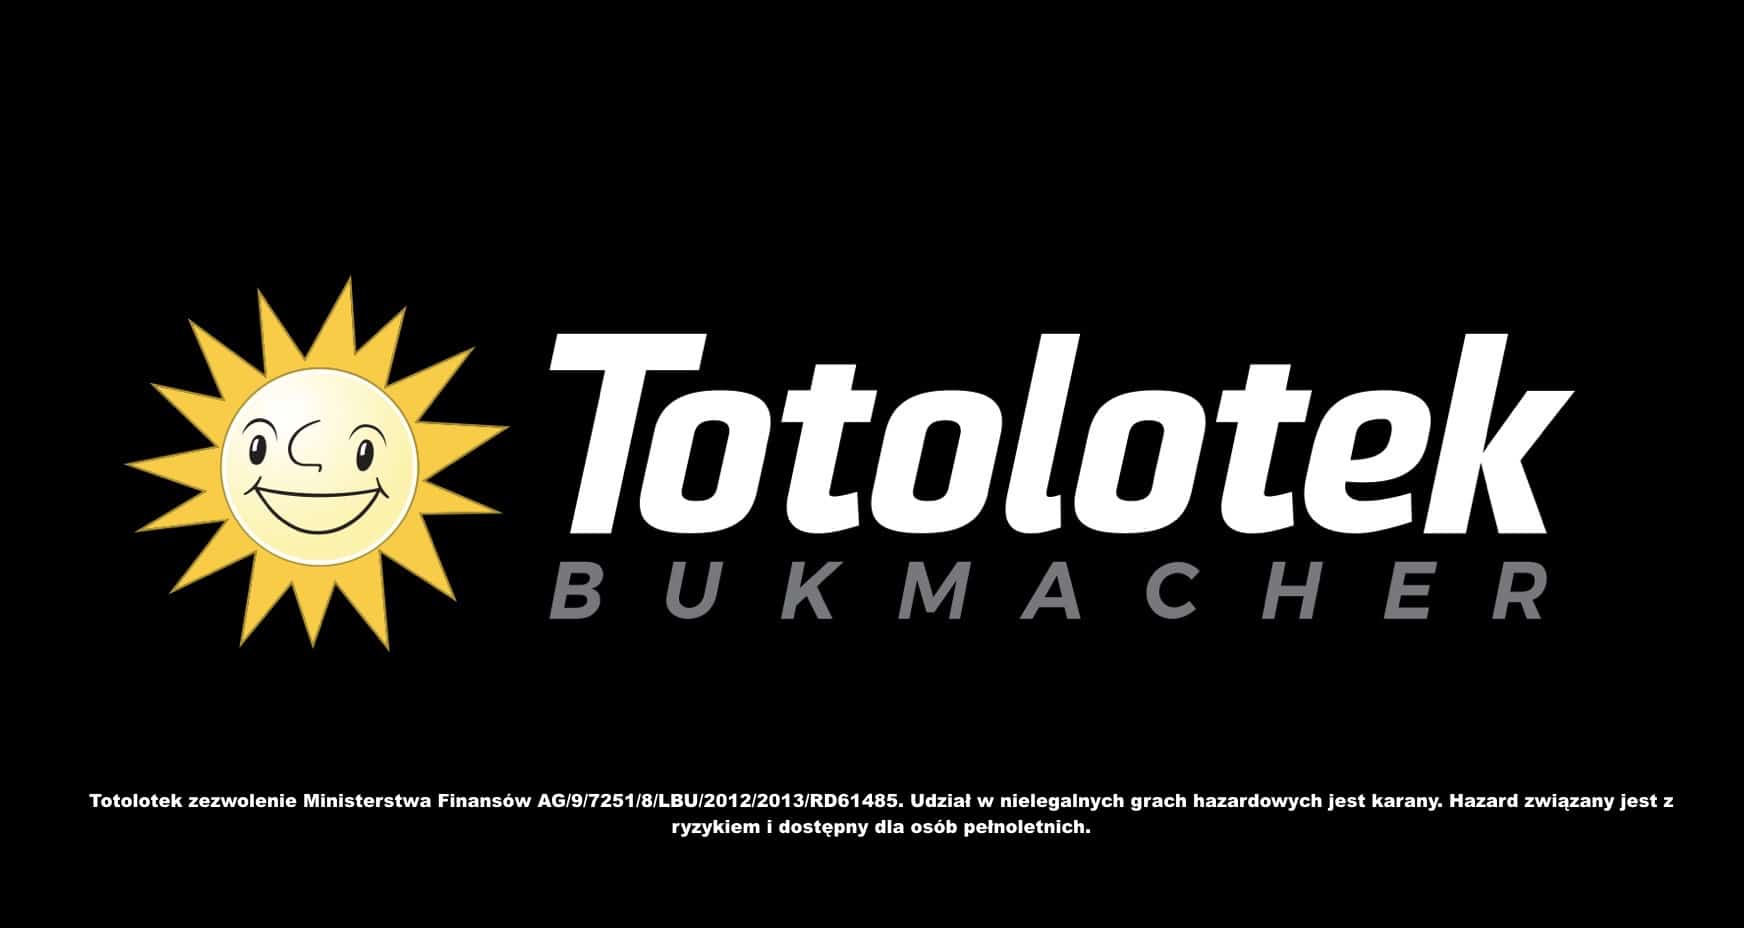 bukmacher-totolotek-zaprezentowa-nowe-logo-zak-ady-bukmacherskie